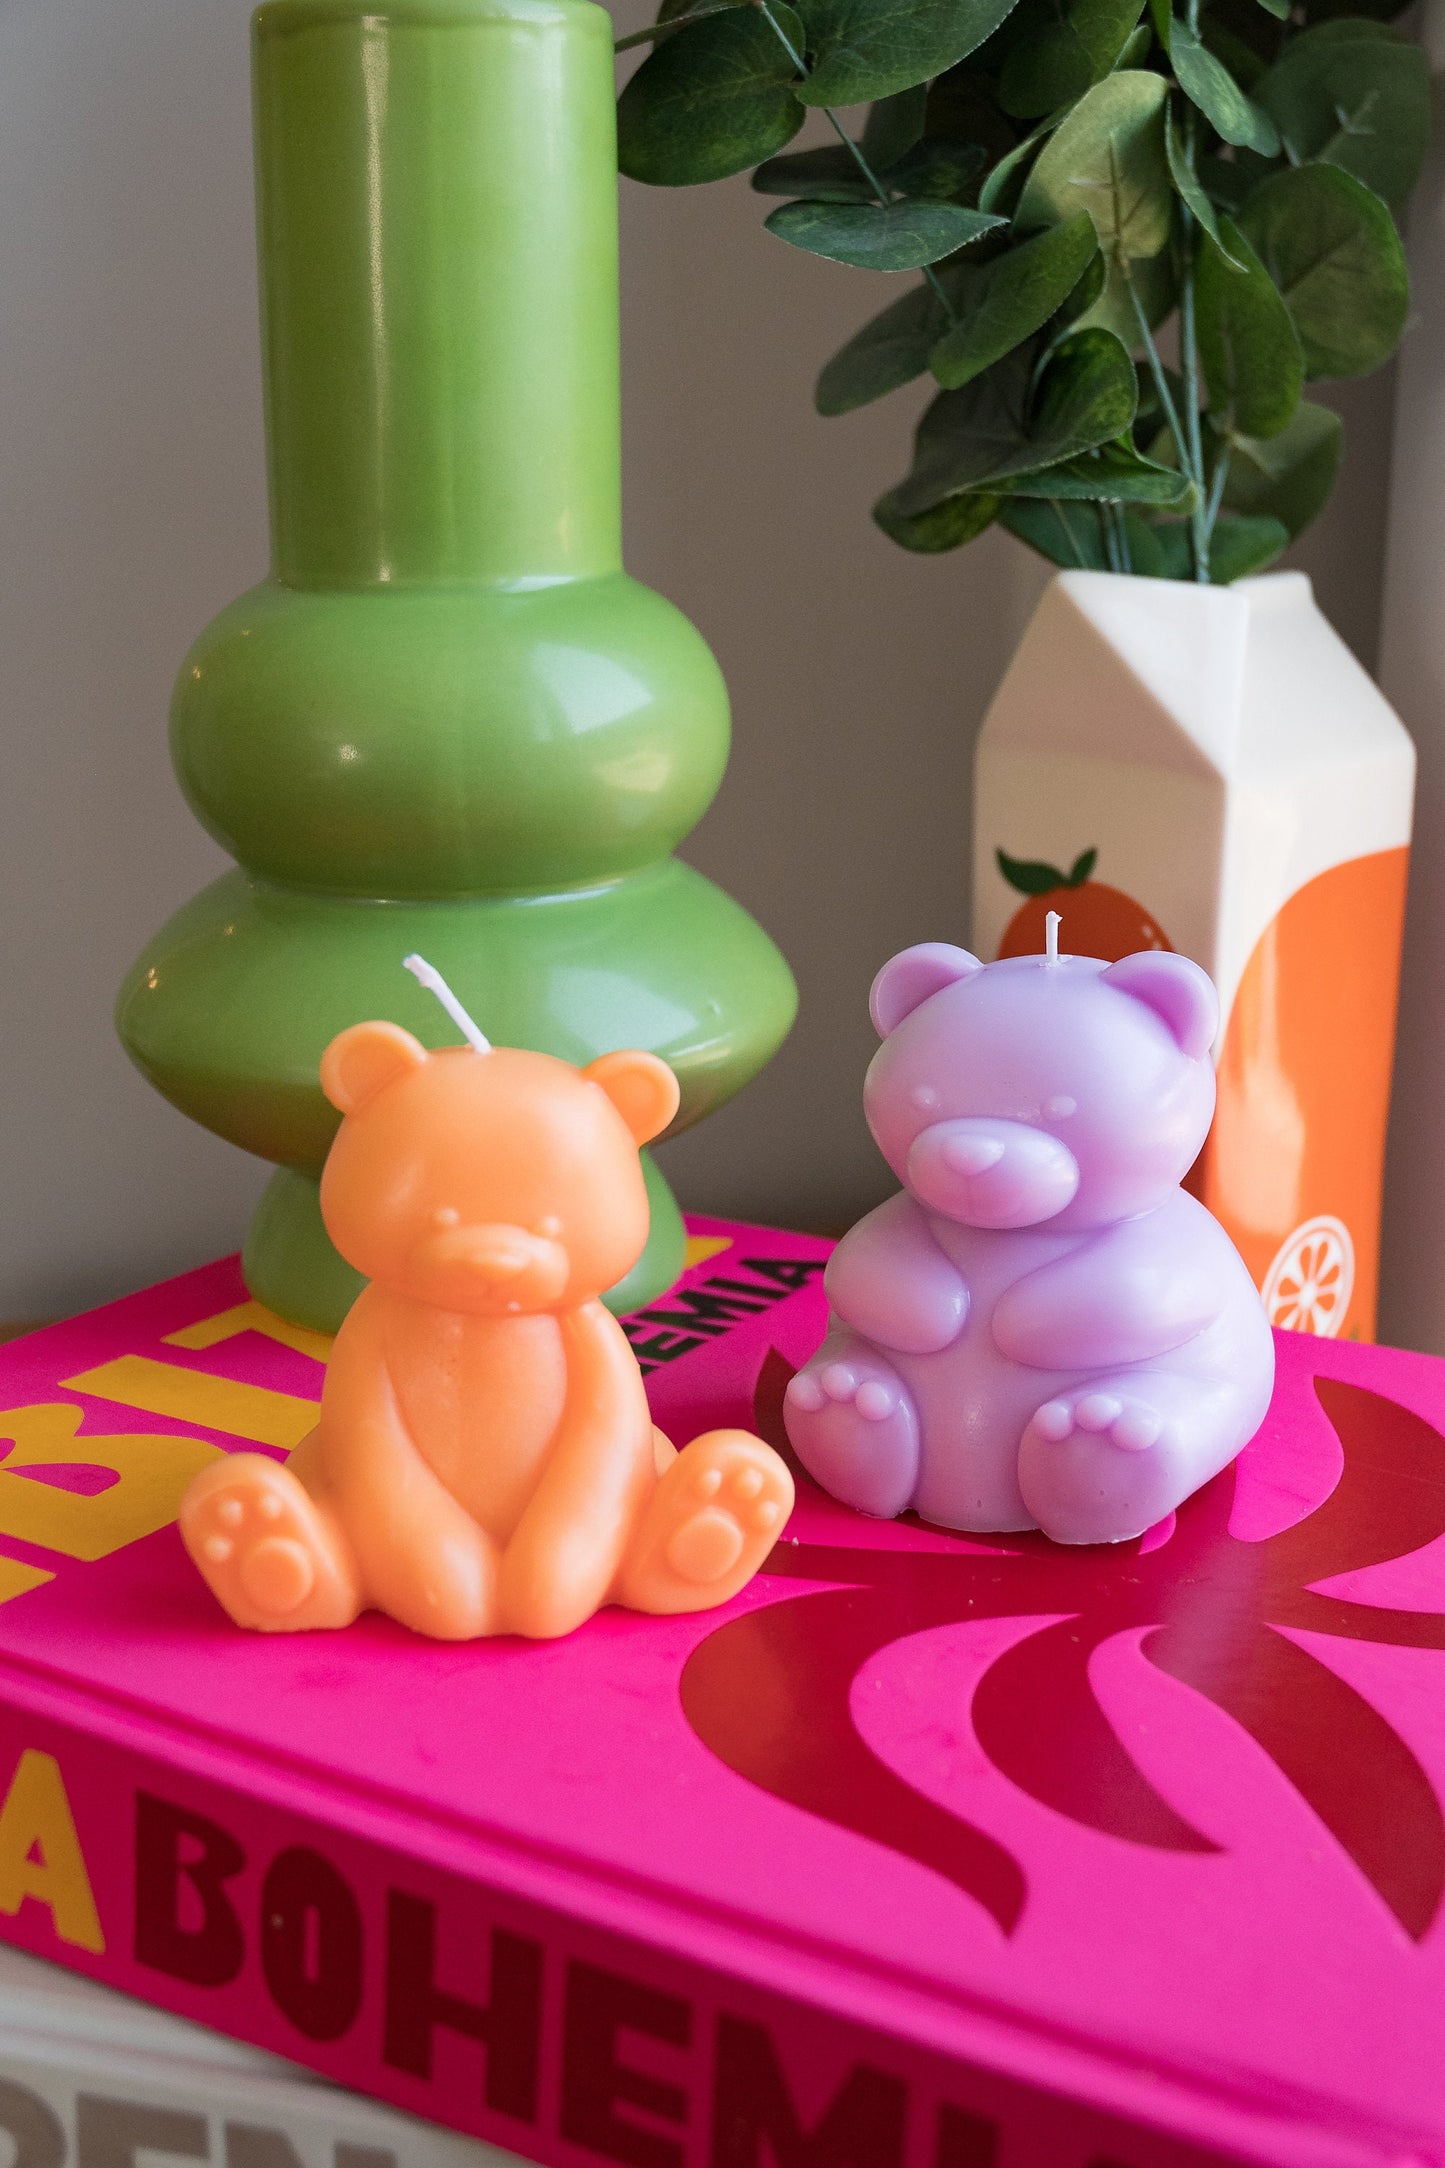 Bear Candle / Teddy Bear / Cute Candle / Custom Soy Wax Candle / Adorable Candle / Custom Made Candles / Cute Home Decor Candles